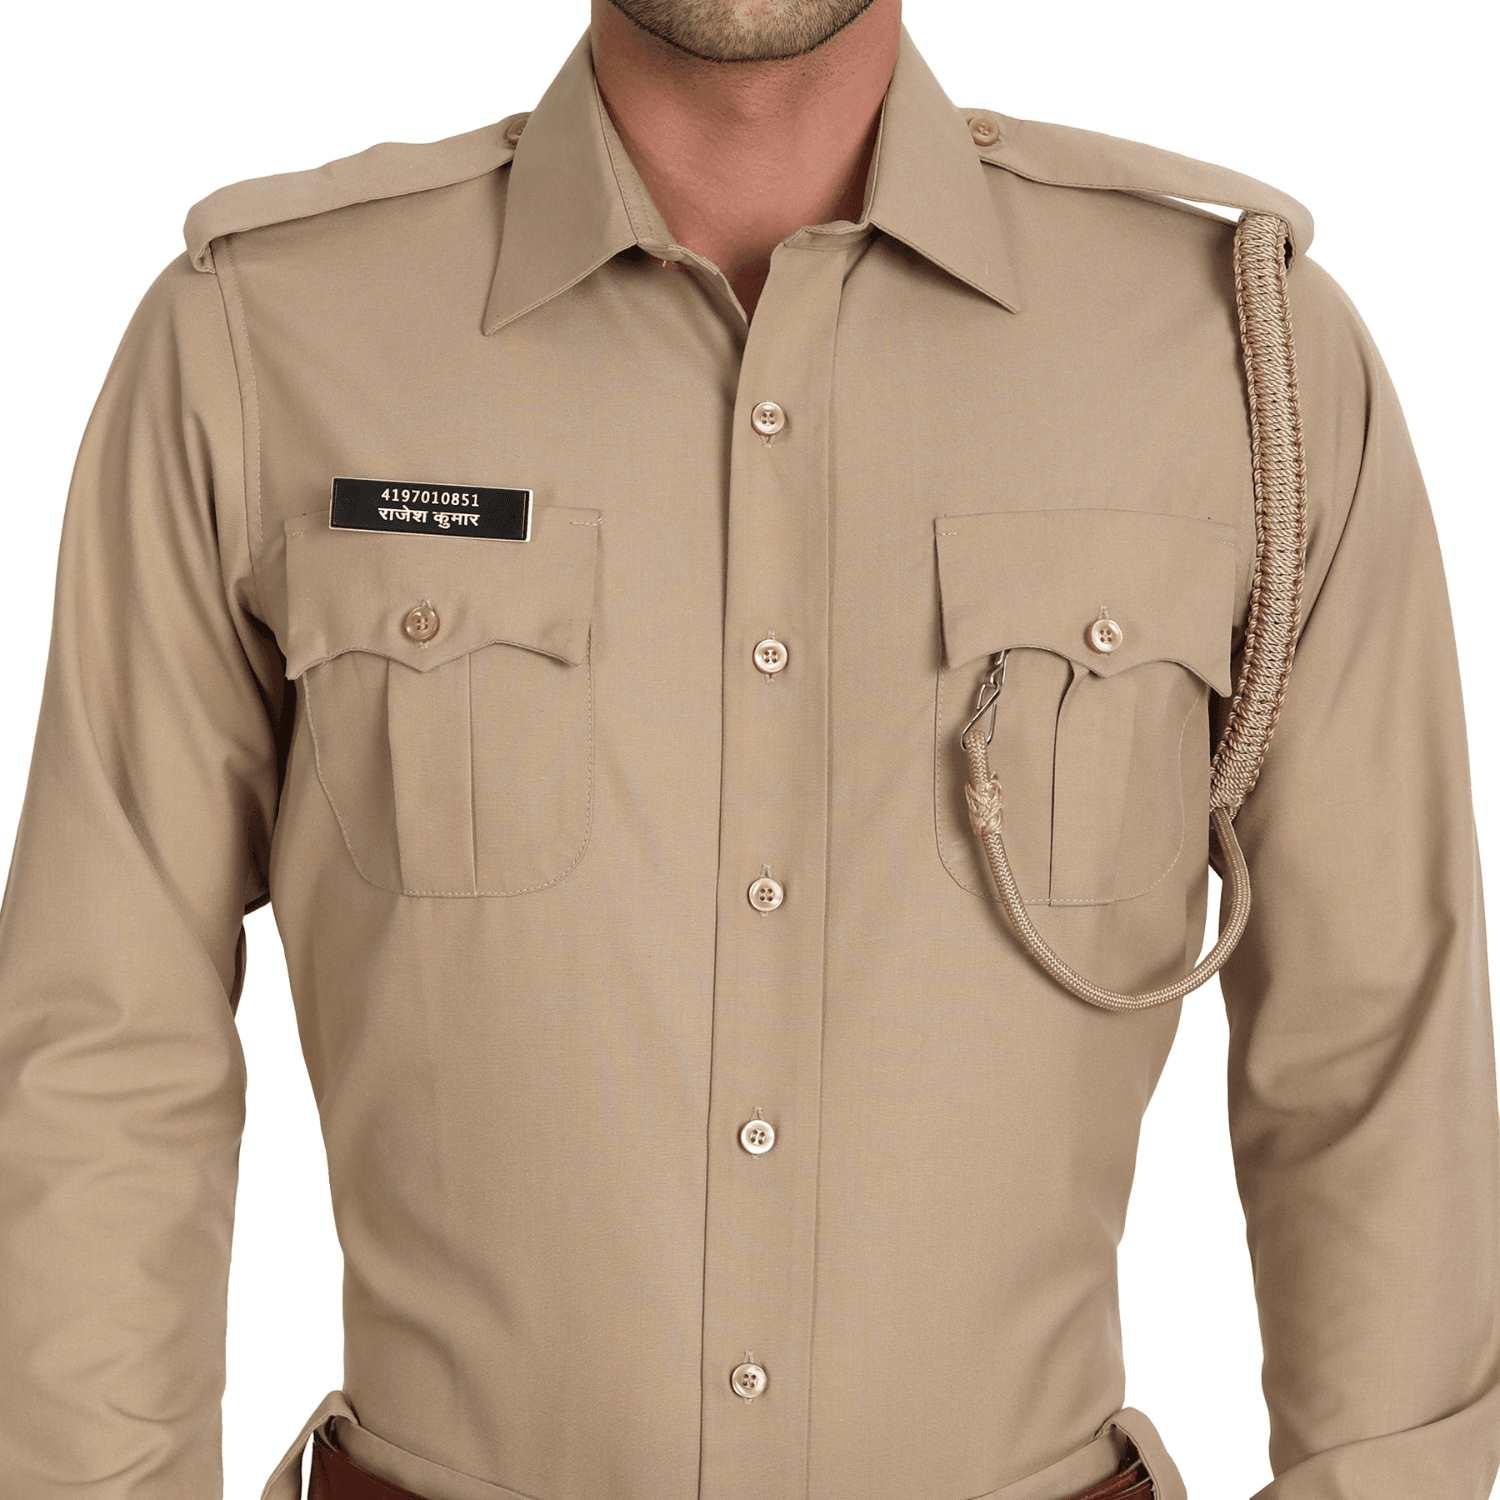 Police Uniform : पुलिस और सेना की वर्दी में क्यों लगी होती है रस्सी, क्या  है इसका नाम और काम? - why rope on police and army uniform know name and  purpose